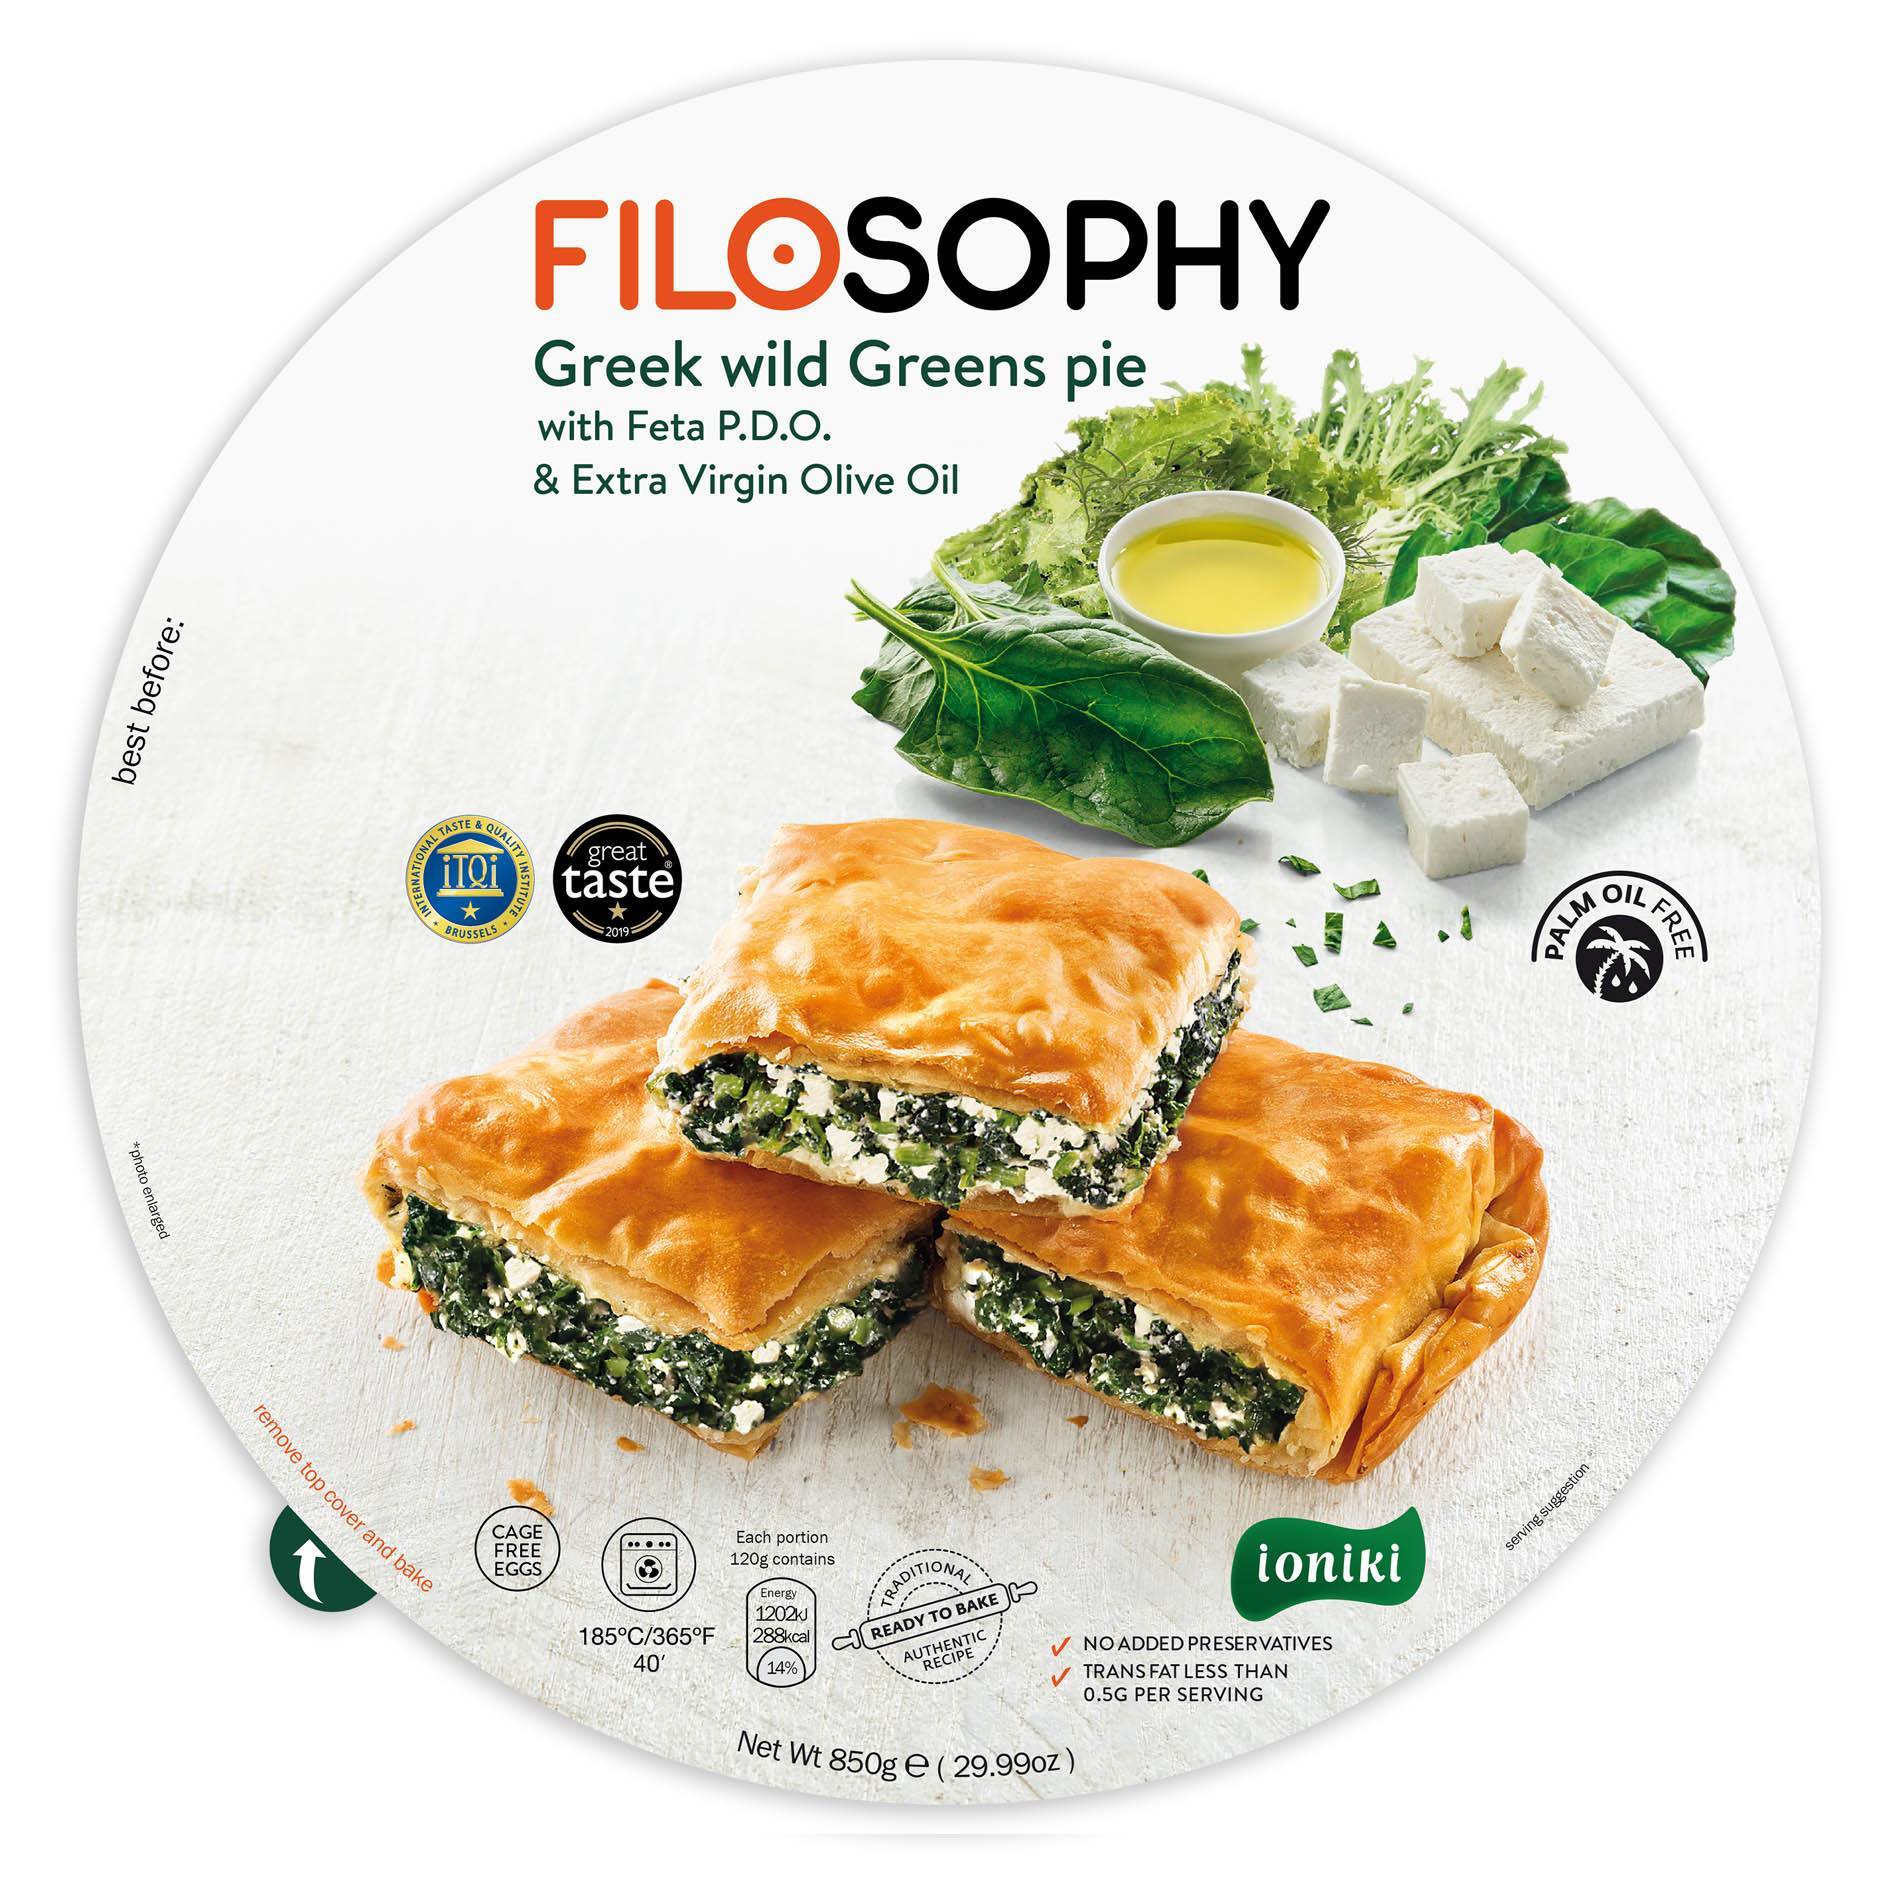 Пирог греческий с дикой зеленью, сыром Фета и оливковым маслом IONIKI 850 г